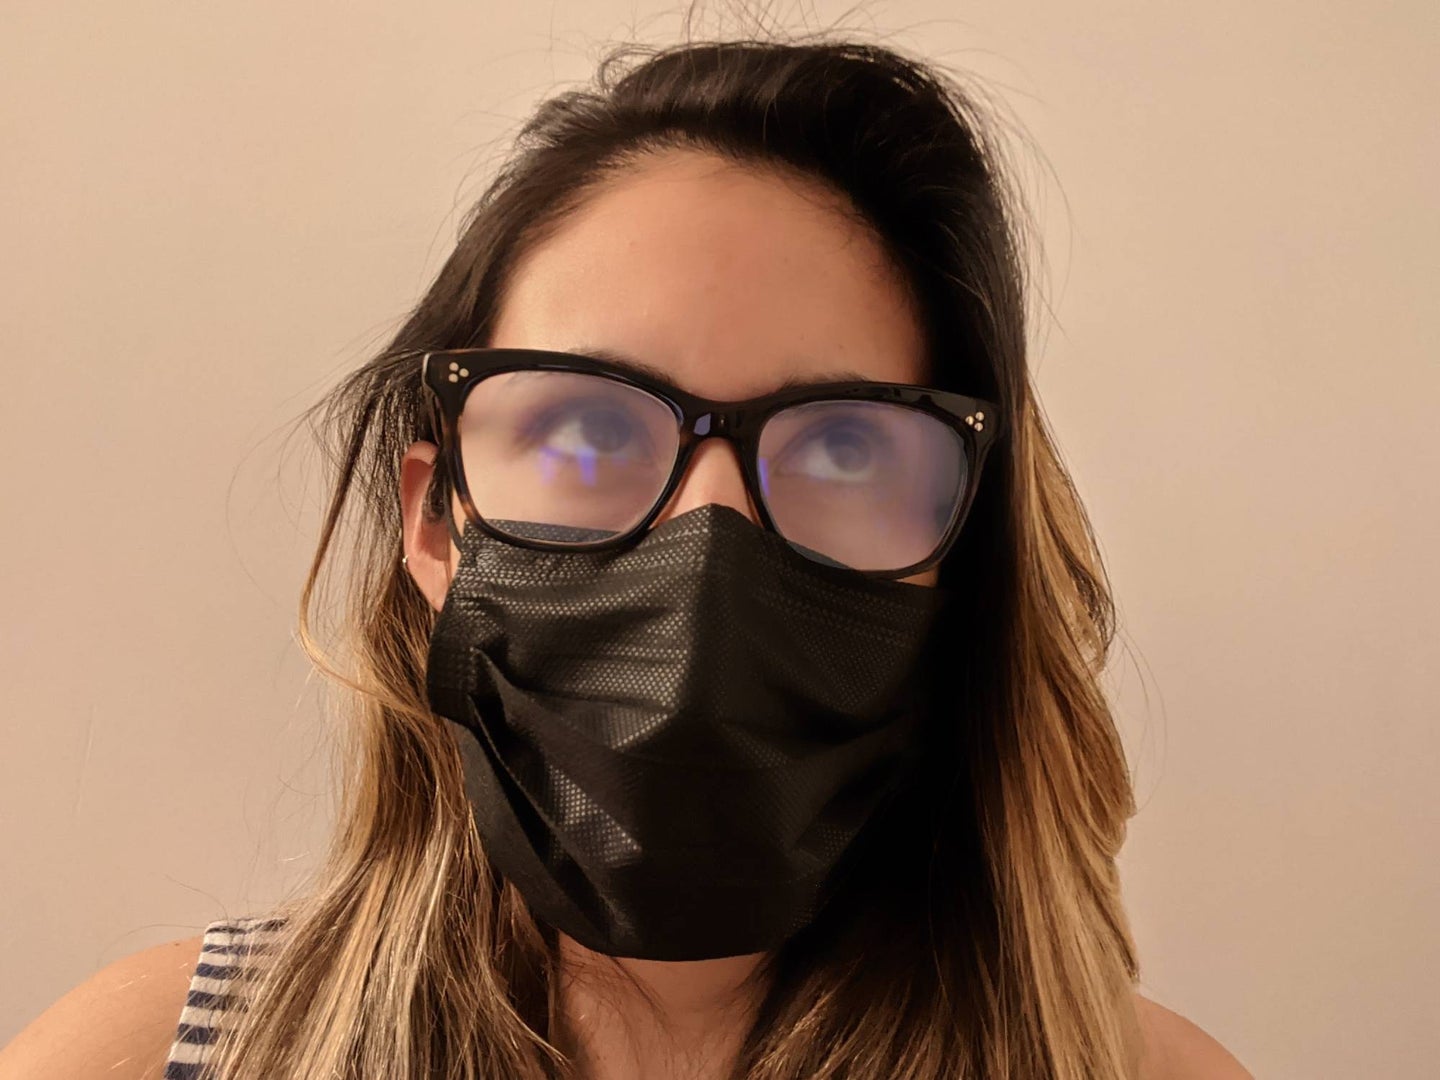 戴口罩时如何防止眼镜起雾?